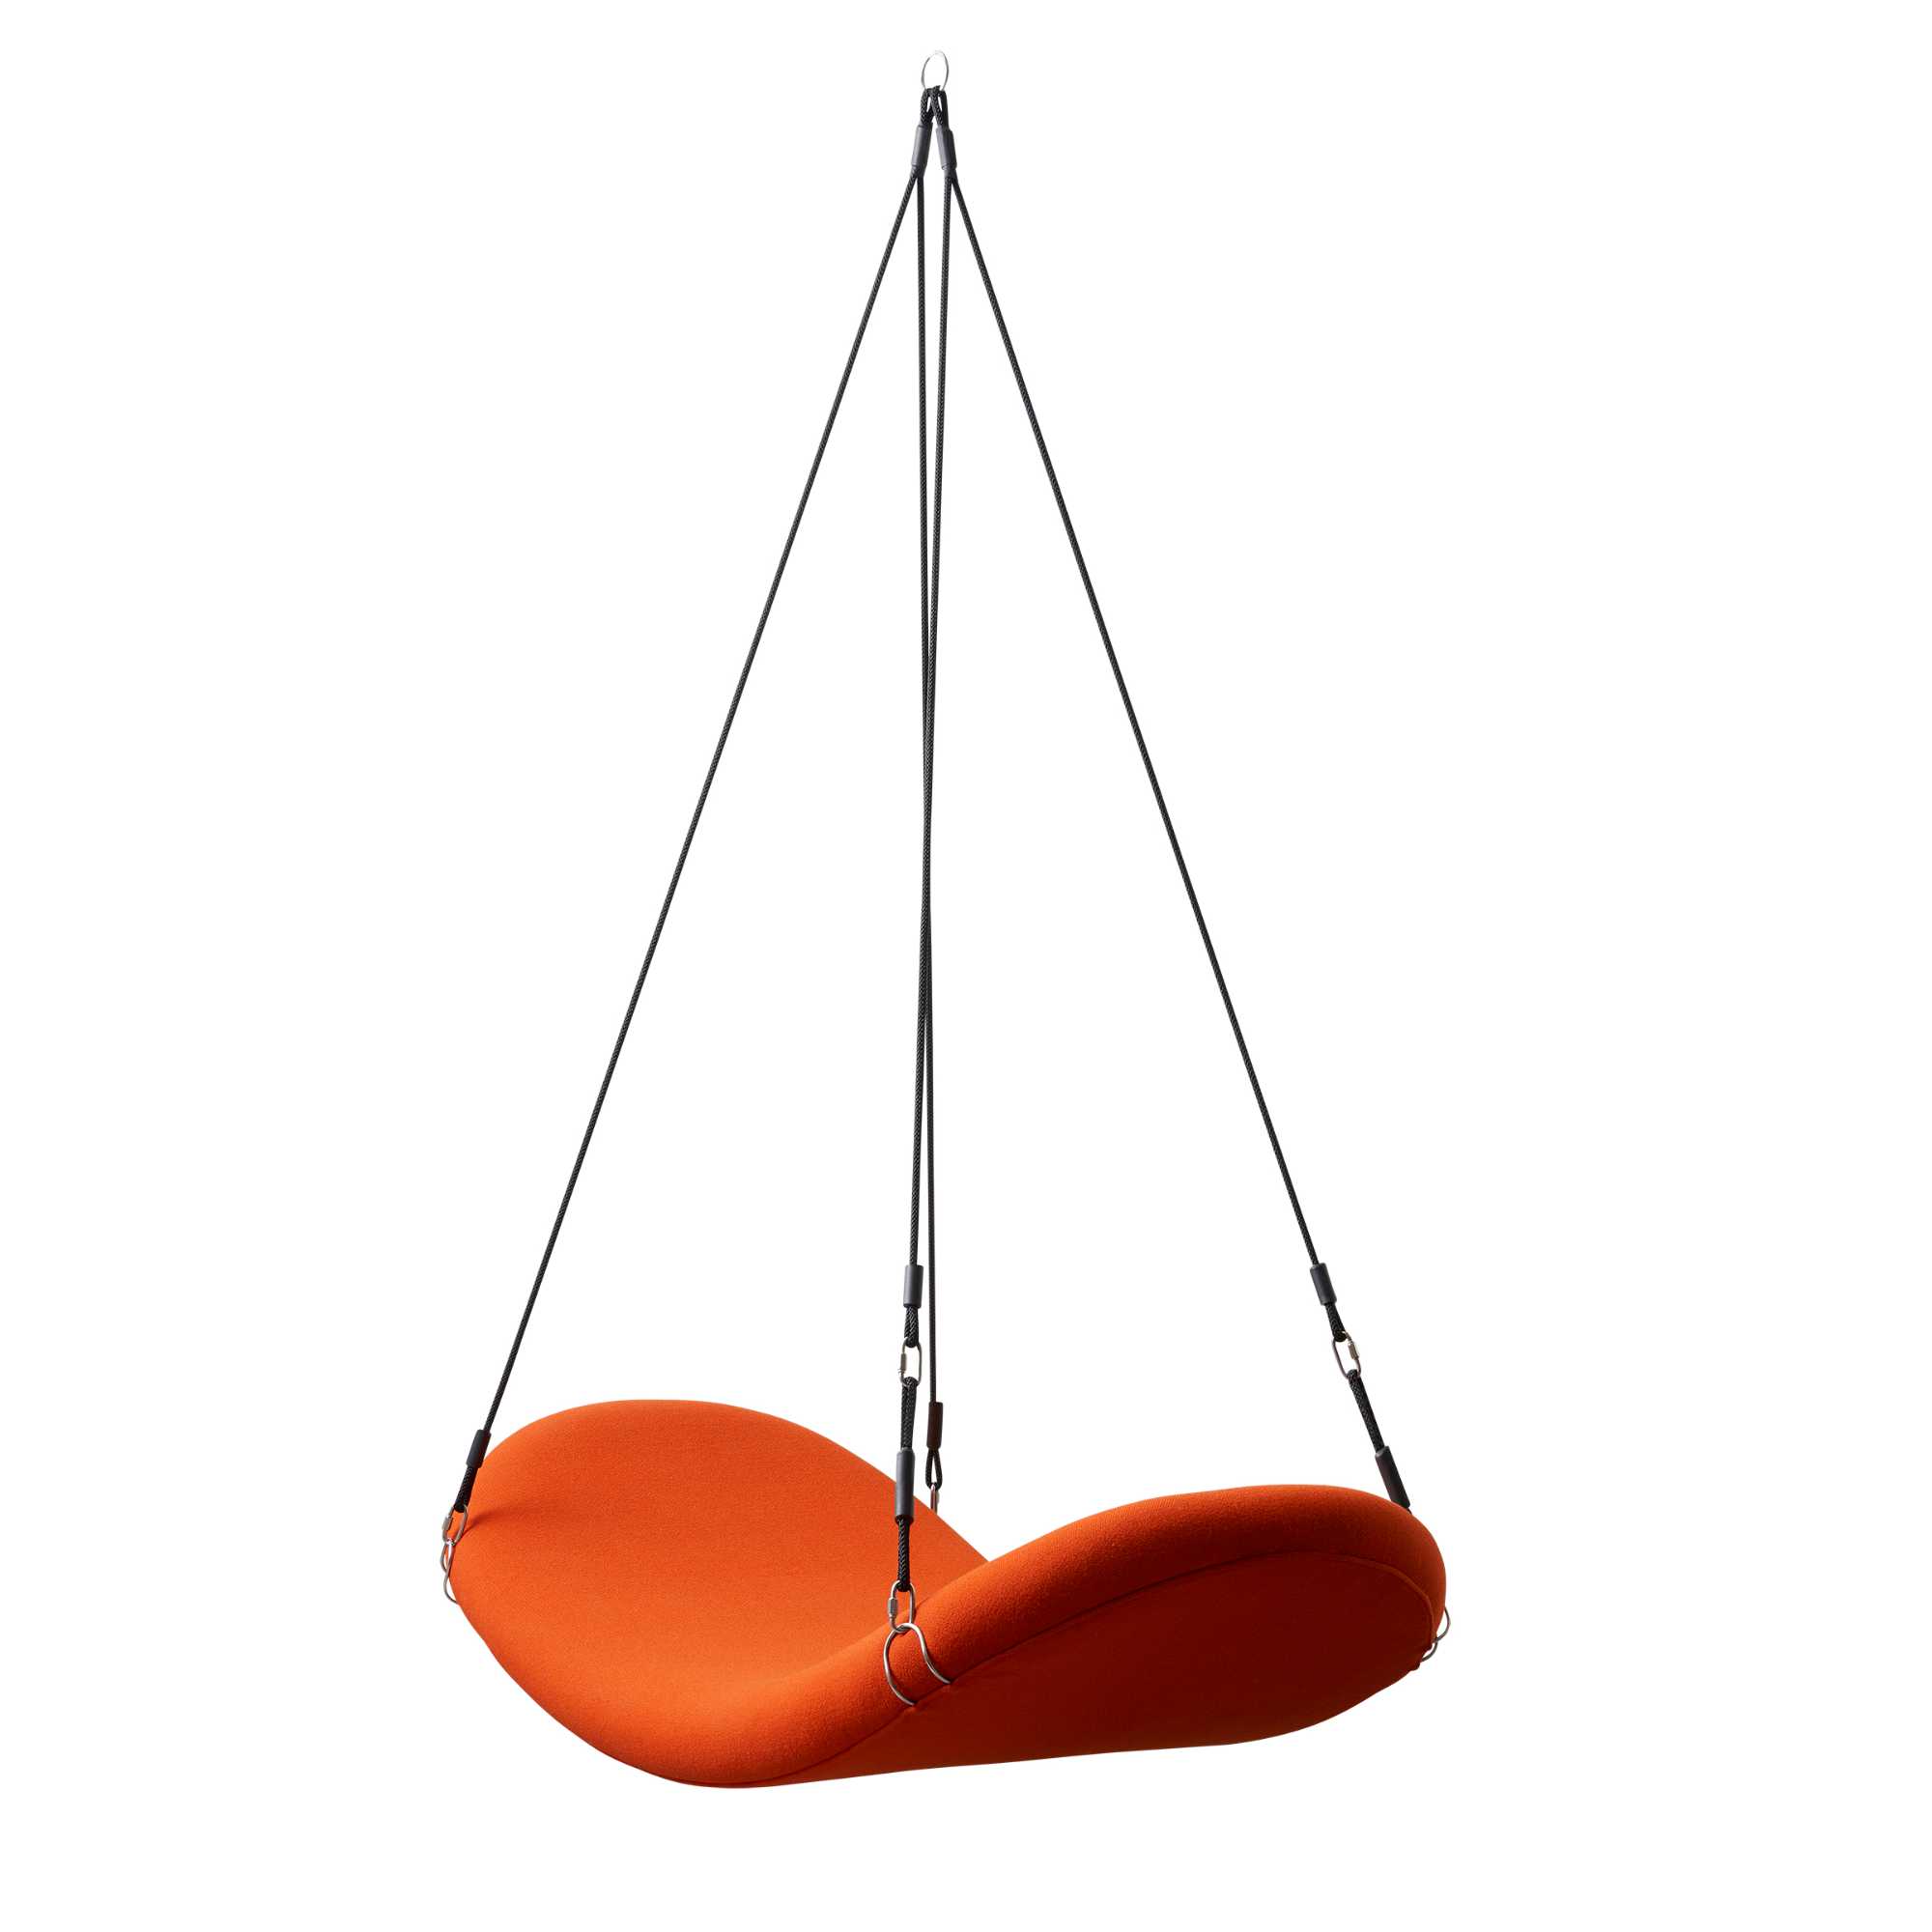 Verpan Flying chair, hallingdal 0590